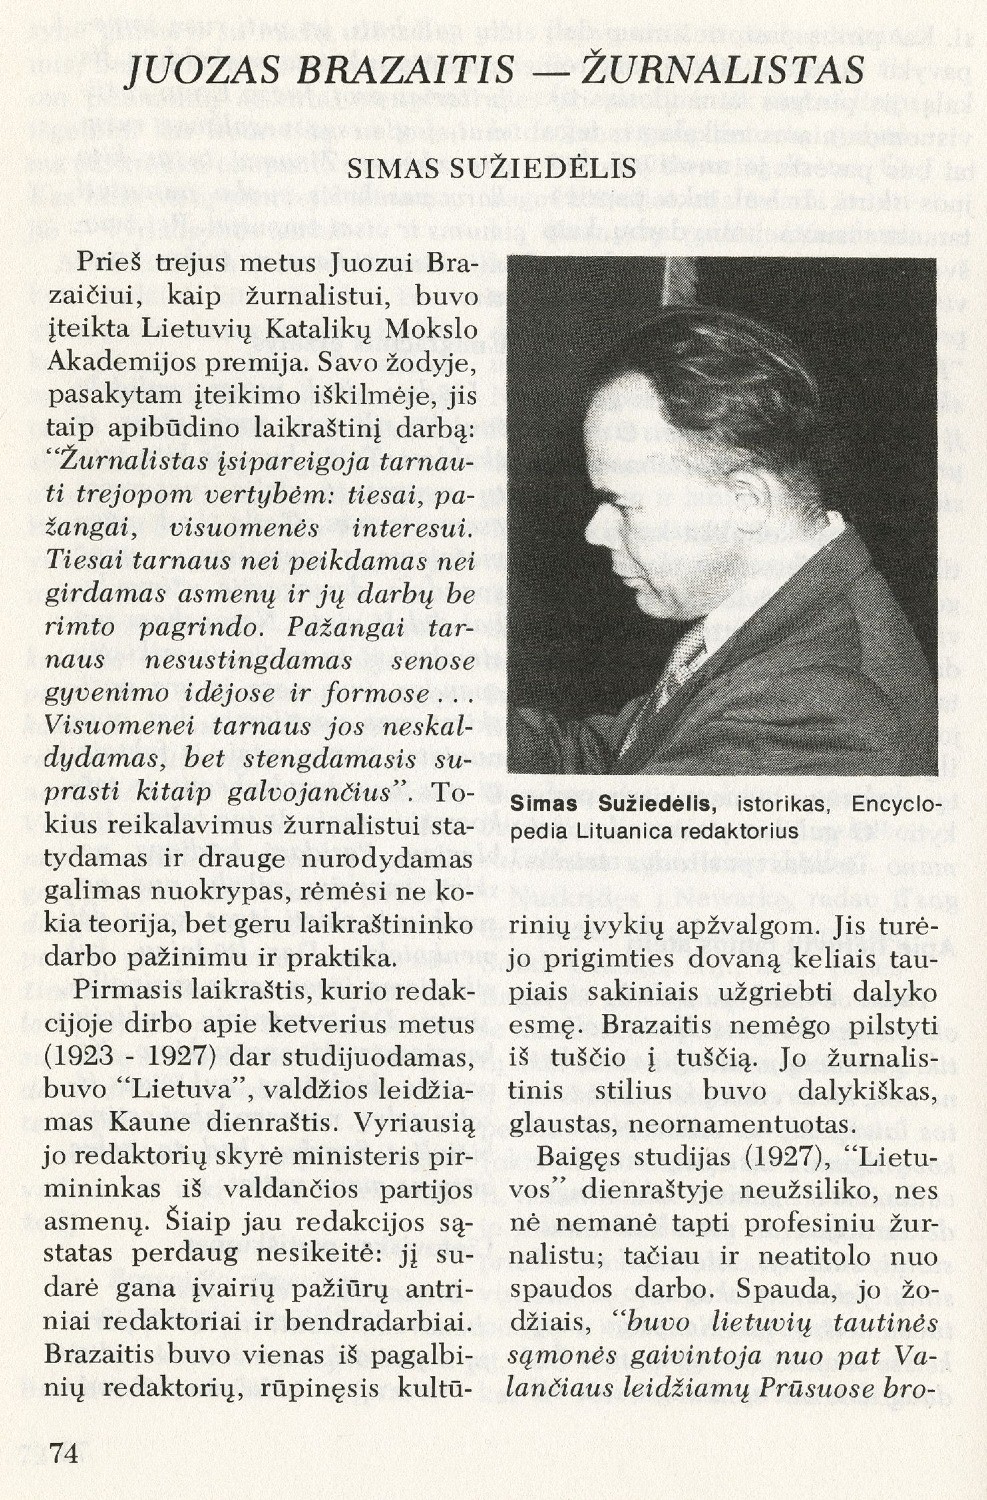 Juozas Brazaitis – žurnalistas / Simas Sužiedėlis // Į laisvę. – 1975, Nr. 65, p. 74–78.